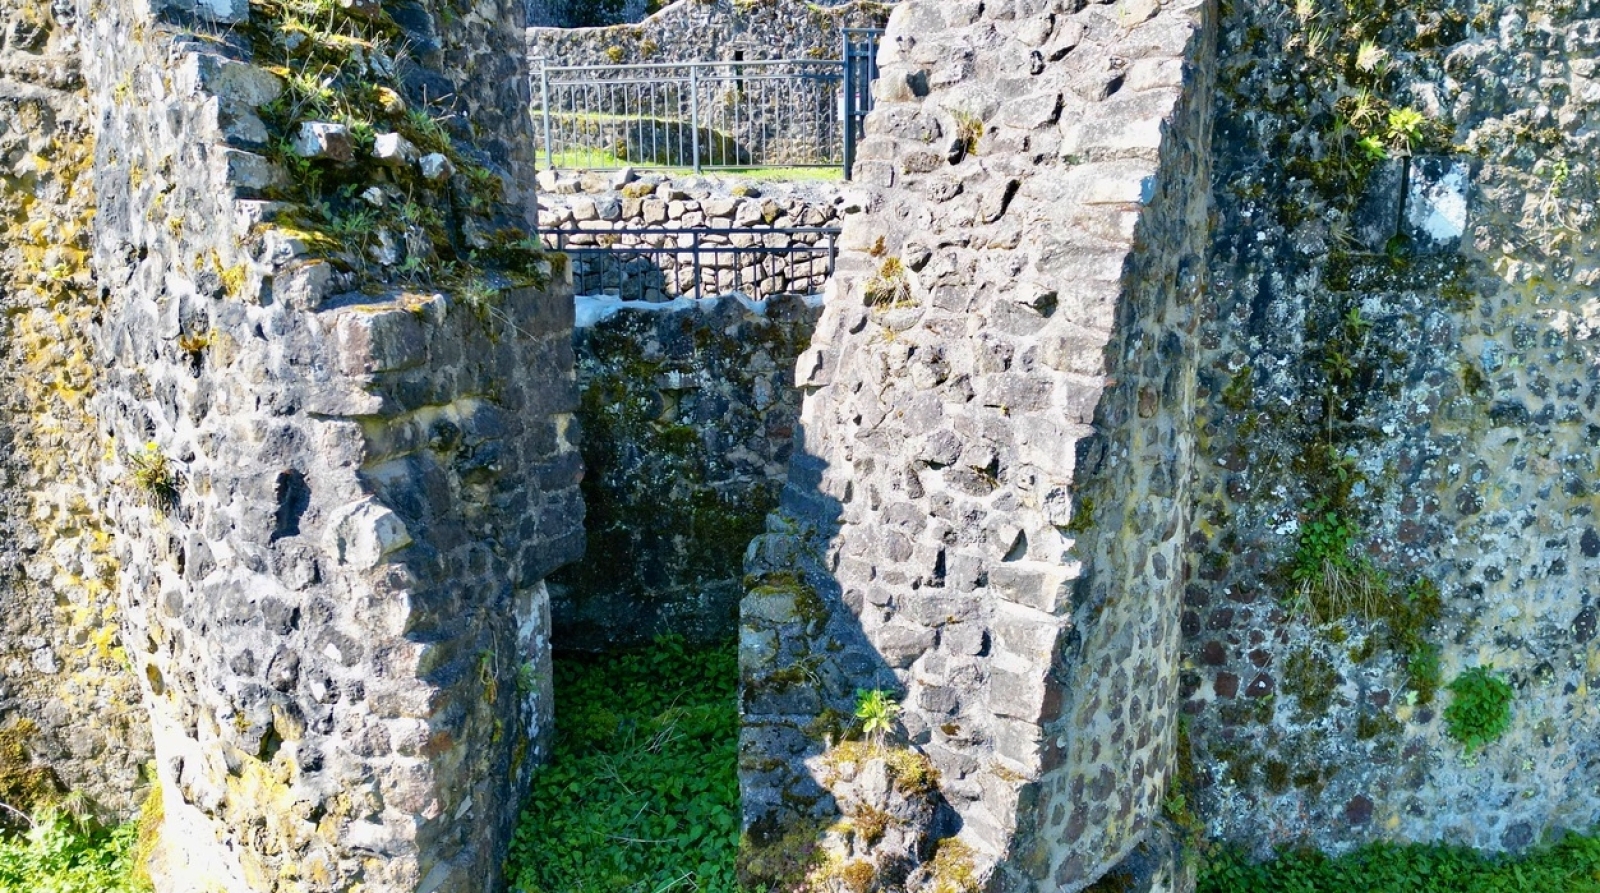 Die Ausfallpforte - Ein Tor, um Feinde aus der Burg heraus anzugreifen